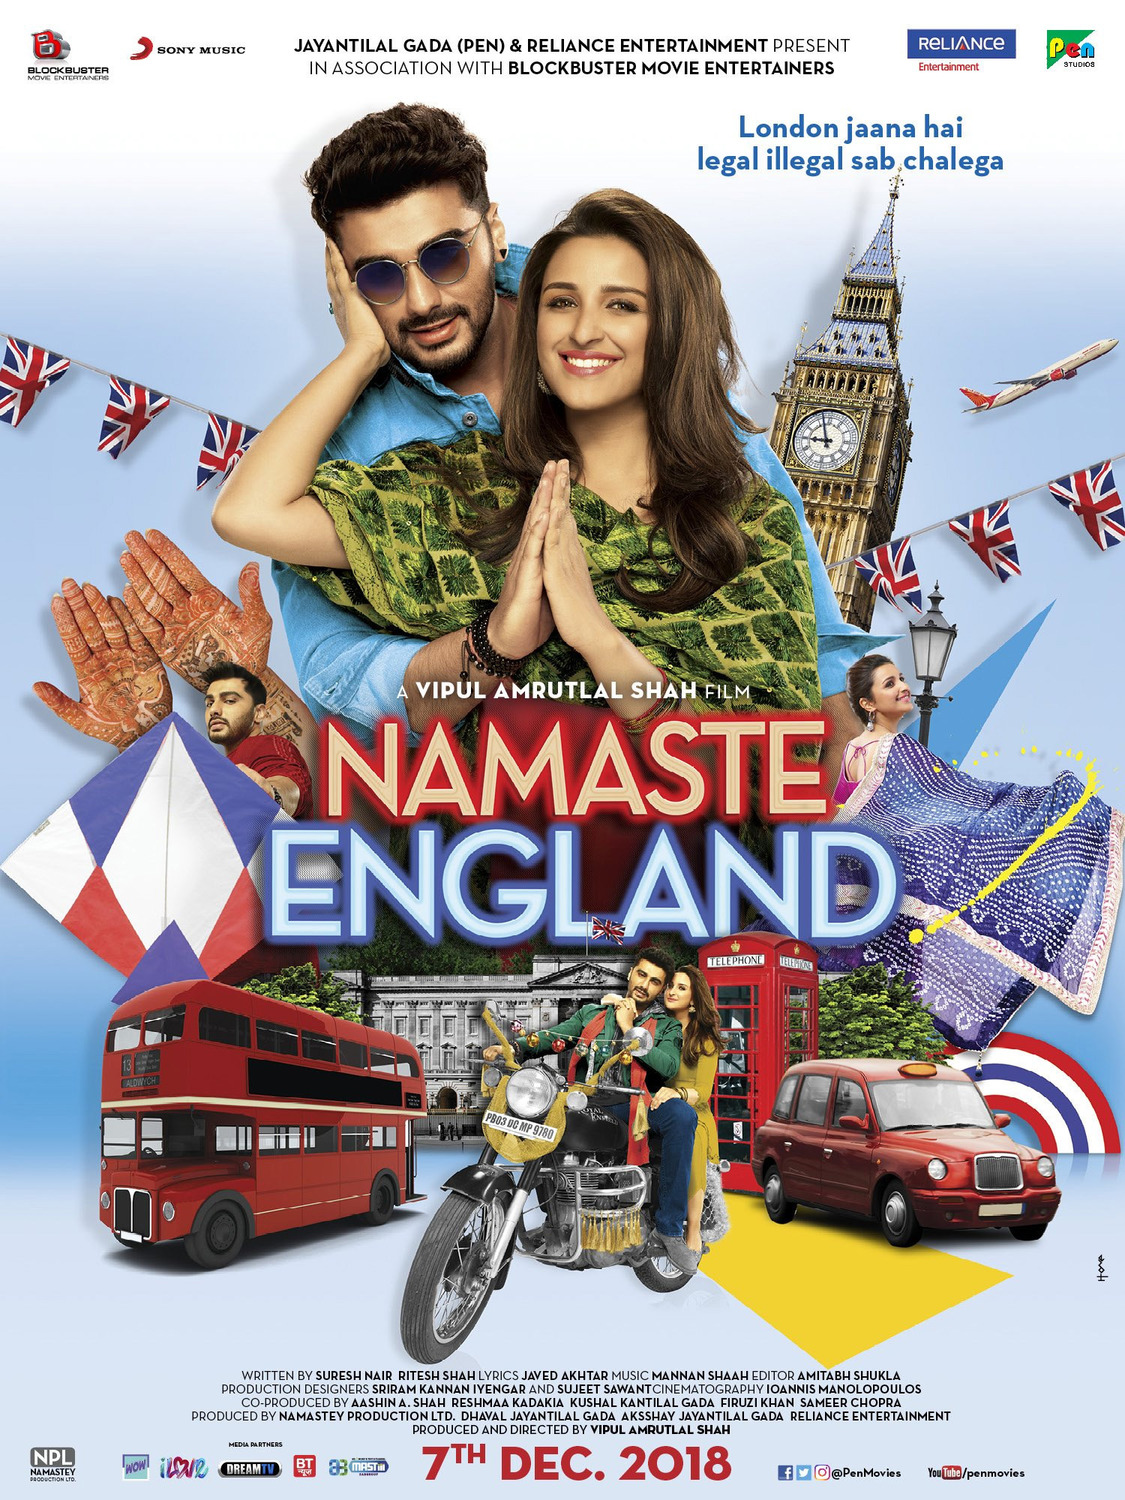 Extra Large Movie Poster Image for Namaste England (#4 of 6)